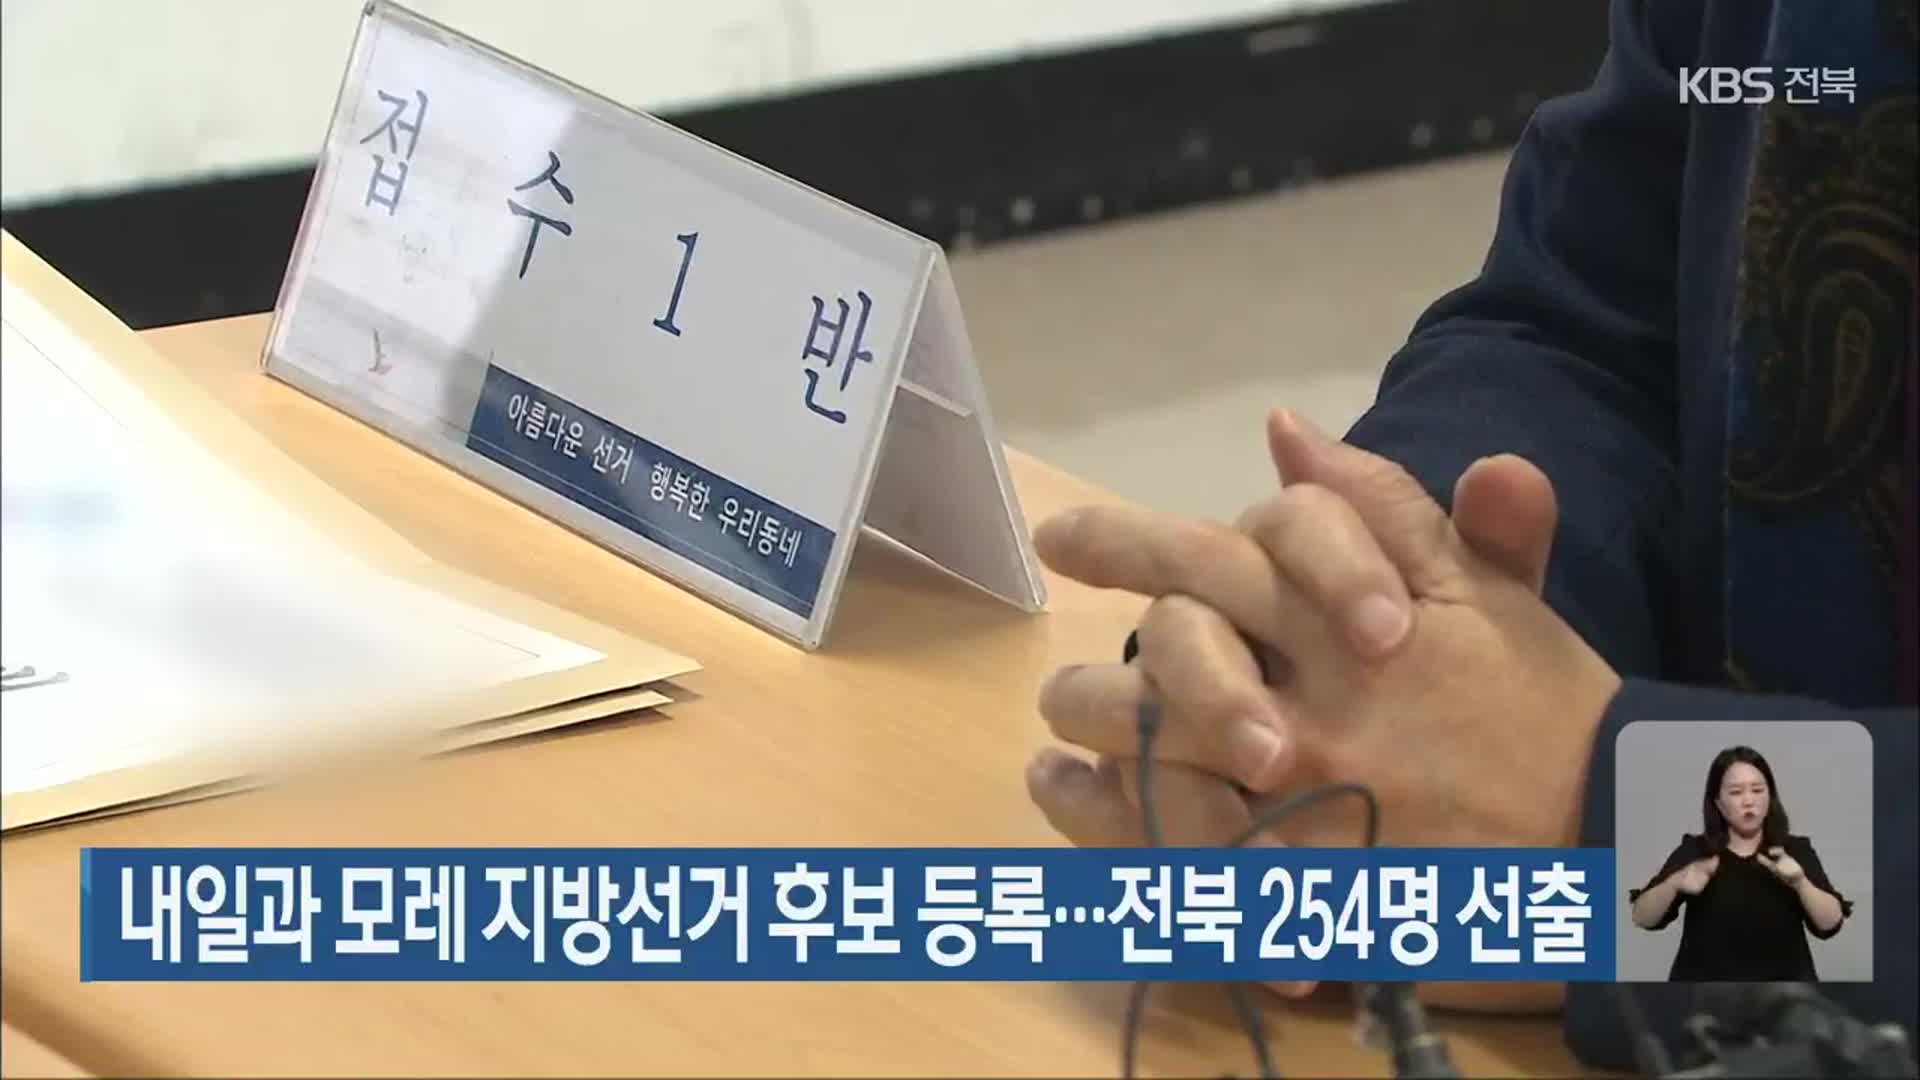 내일과 모레 지방선거 후보 등록…전북 254명 선출